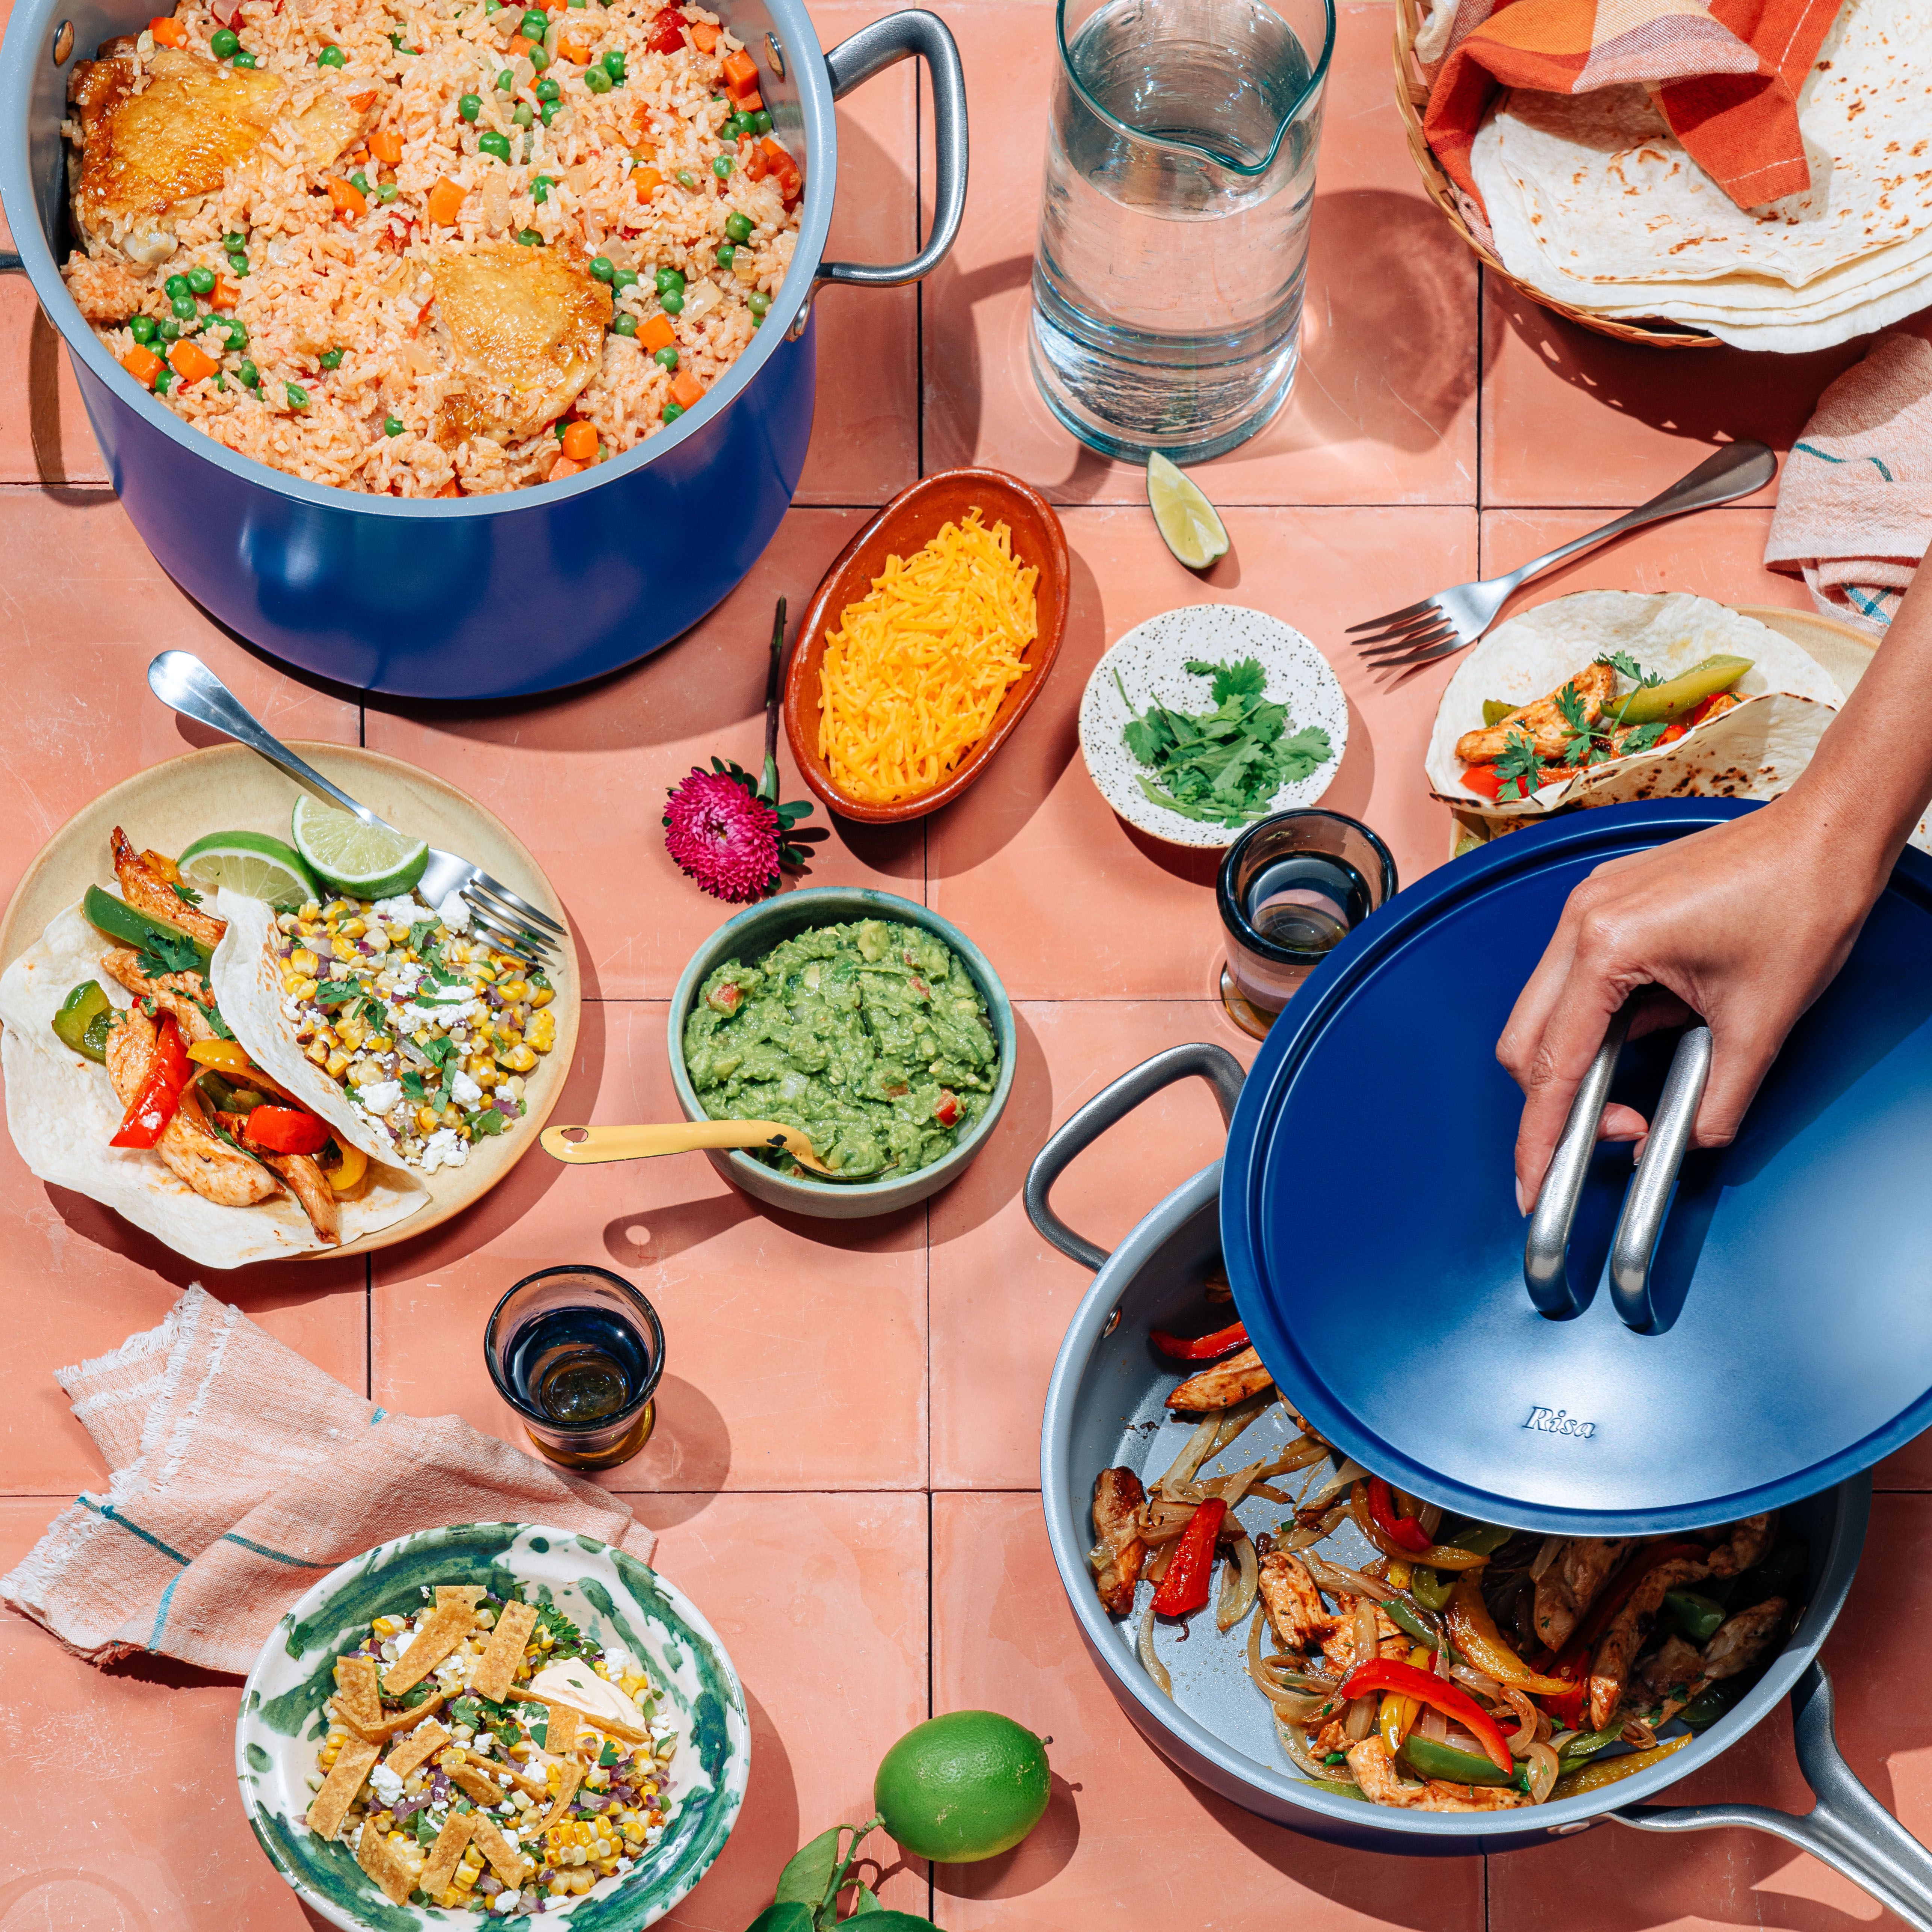 Eva Longoria Creates New Cookware Line With Heyday